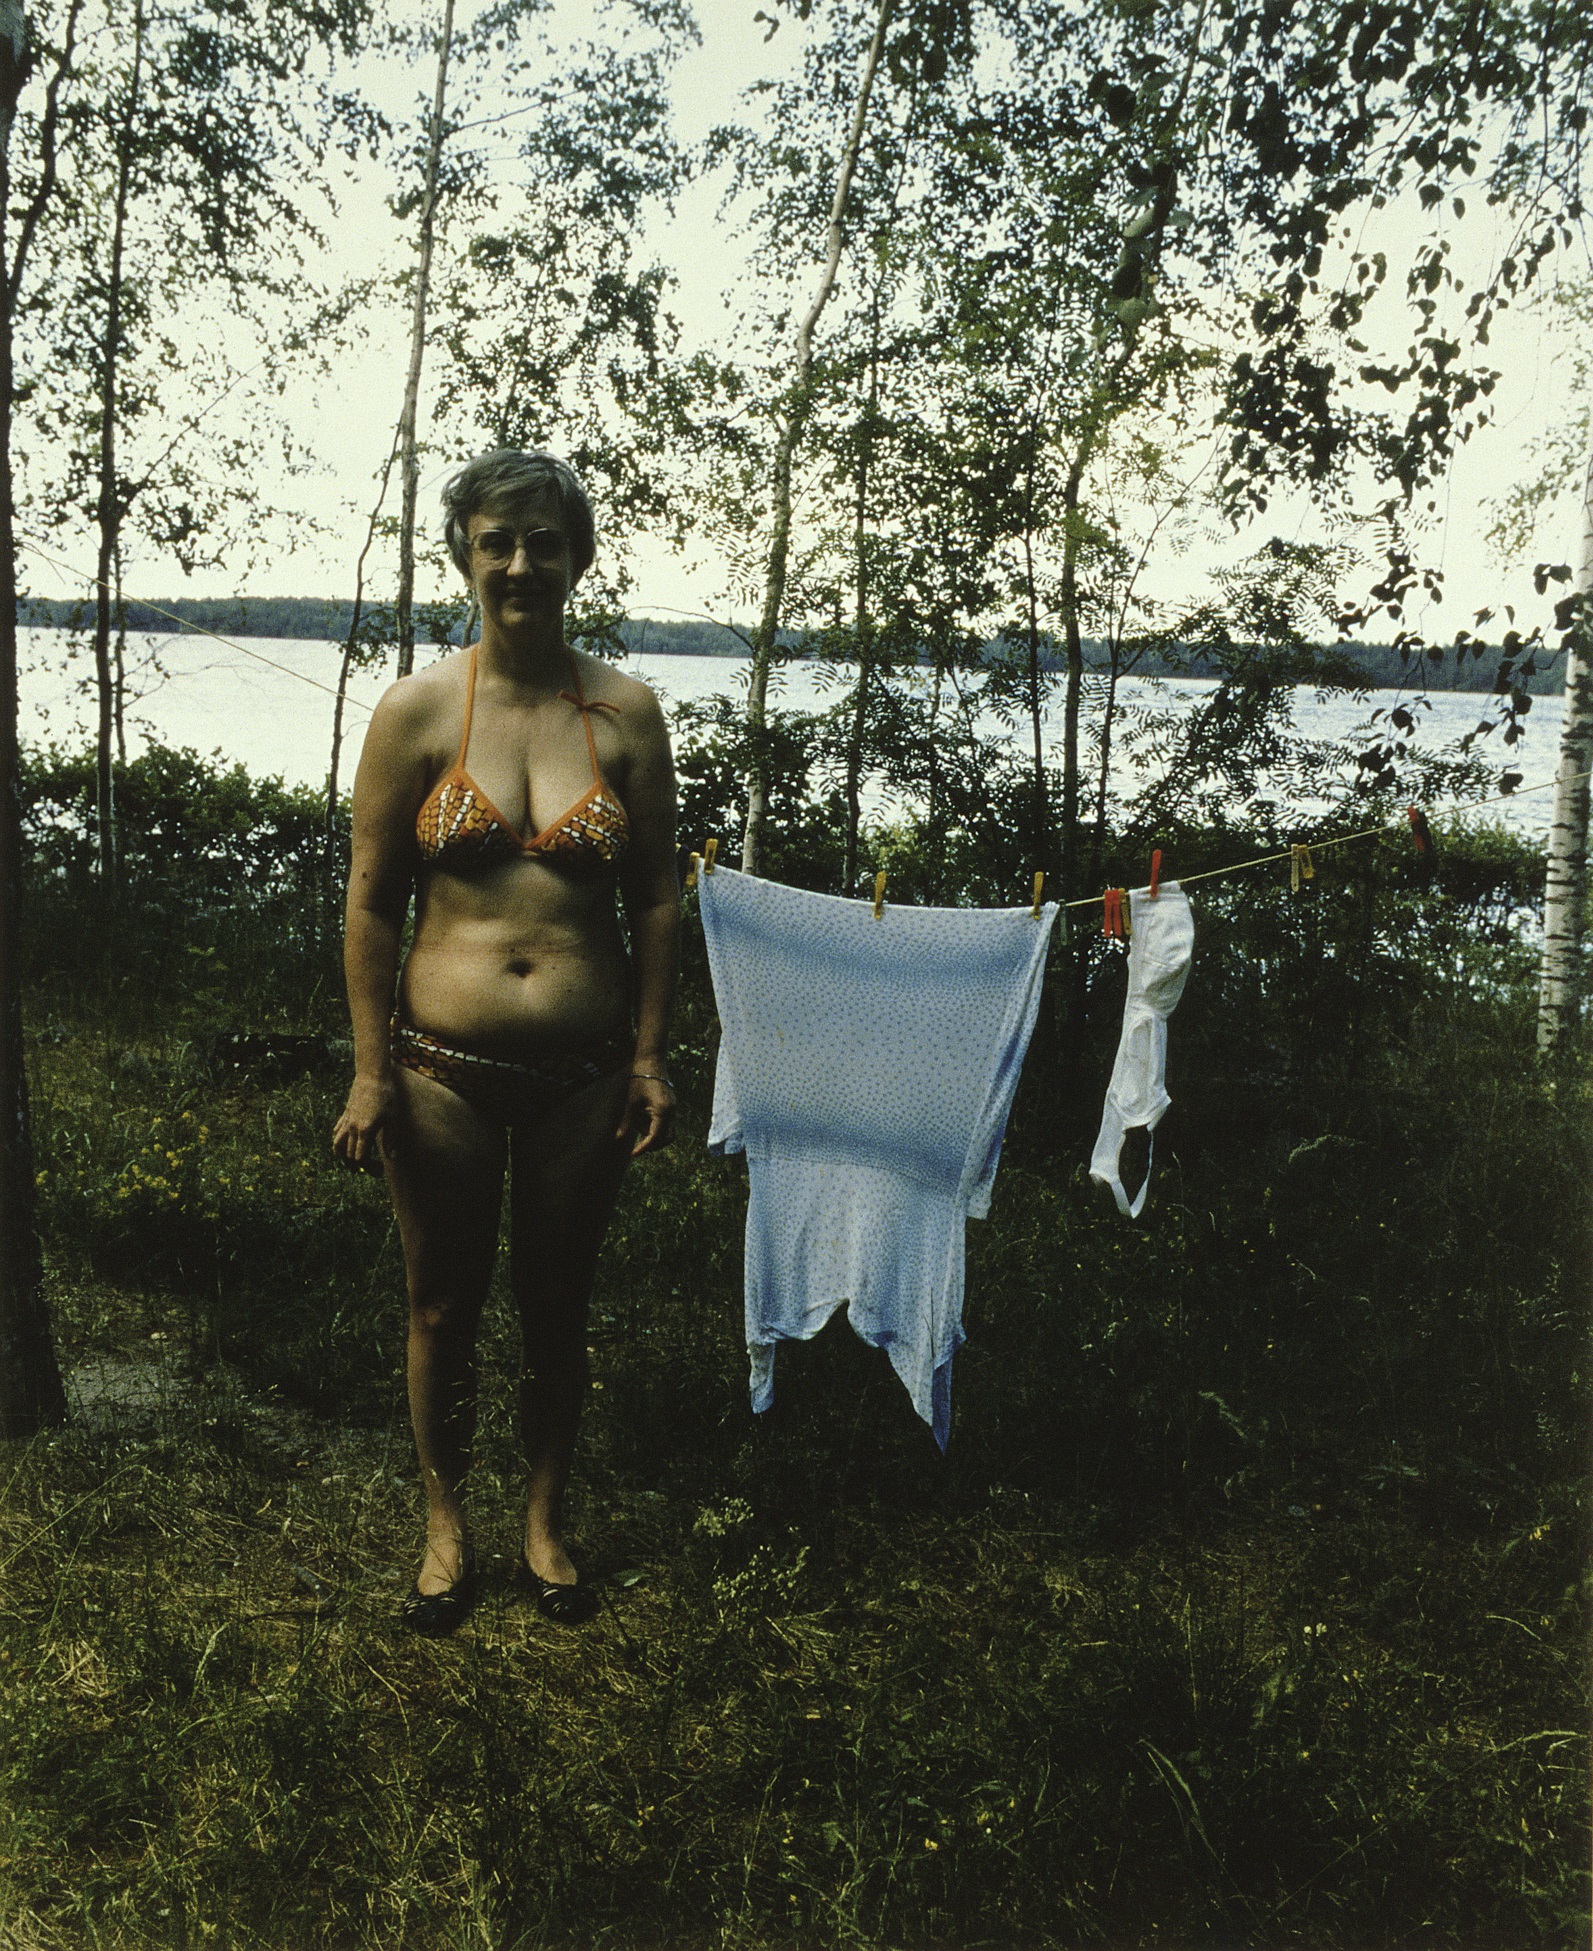 Kesämökille on päästävä, ellei omalle niin kuokkimaan. Pekka Turunen, 1986. Gorilla-kokoelma/Suomen valokuvataiteen museo.